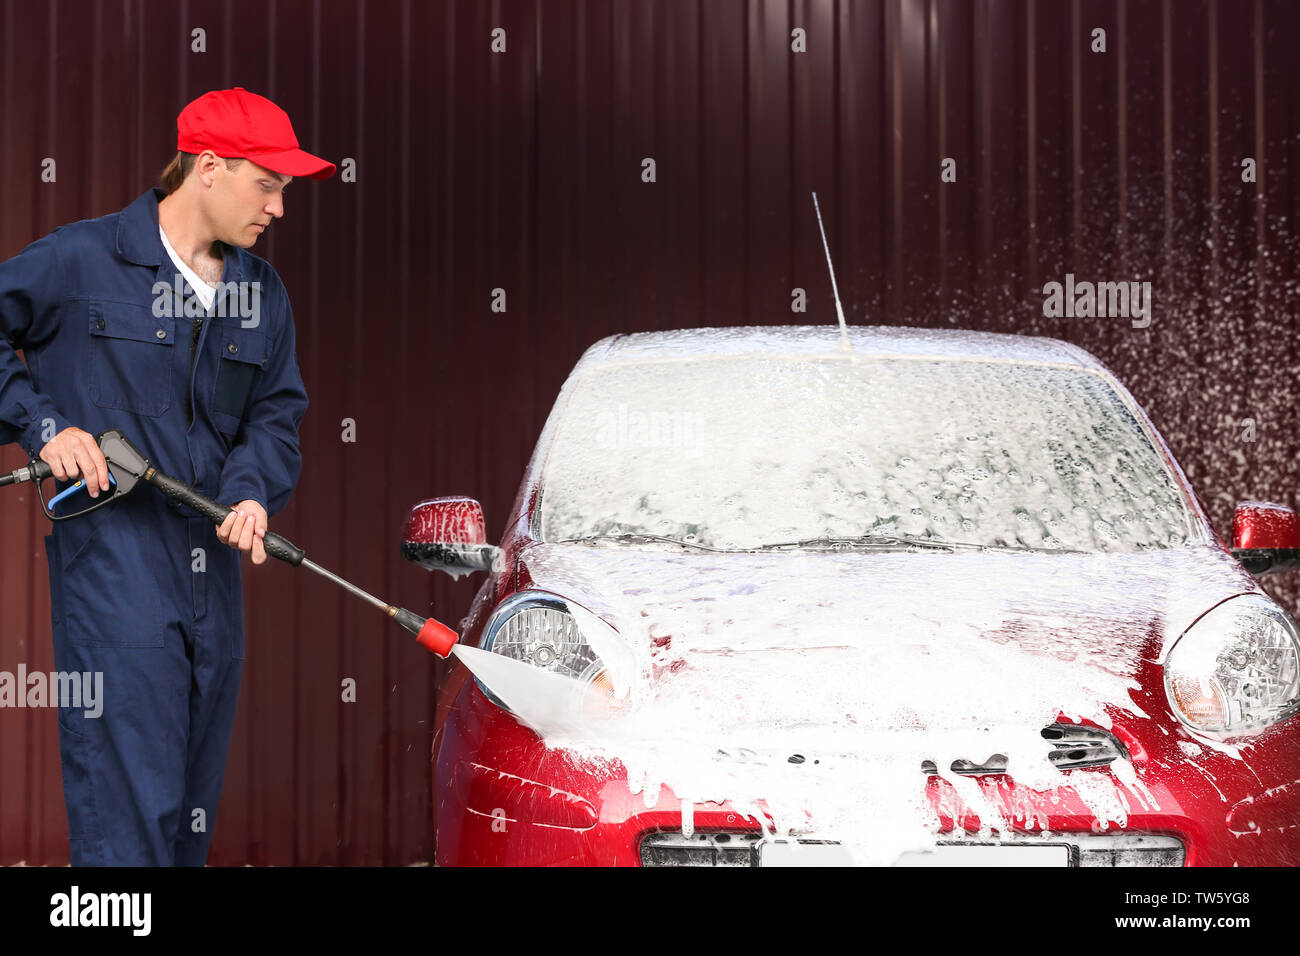 Nettoyage automobile avec l'homme de l'eau à haute pression, lavage de voiture Banque D'Images